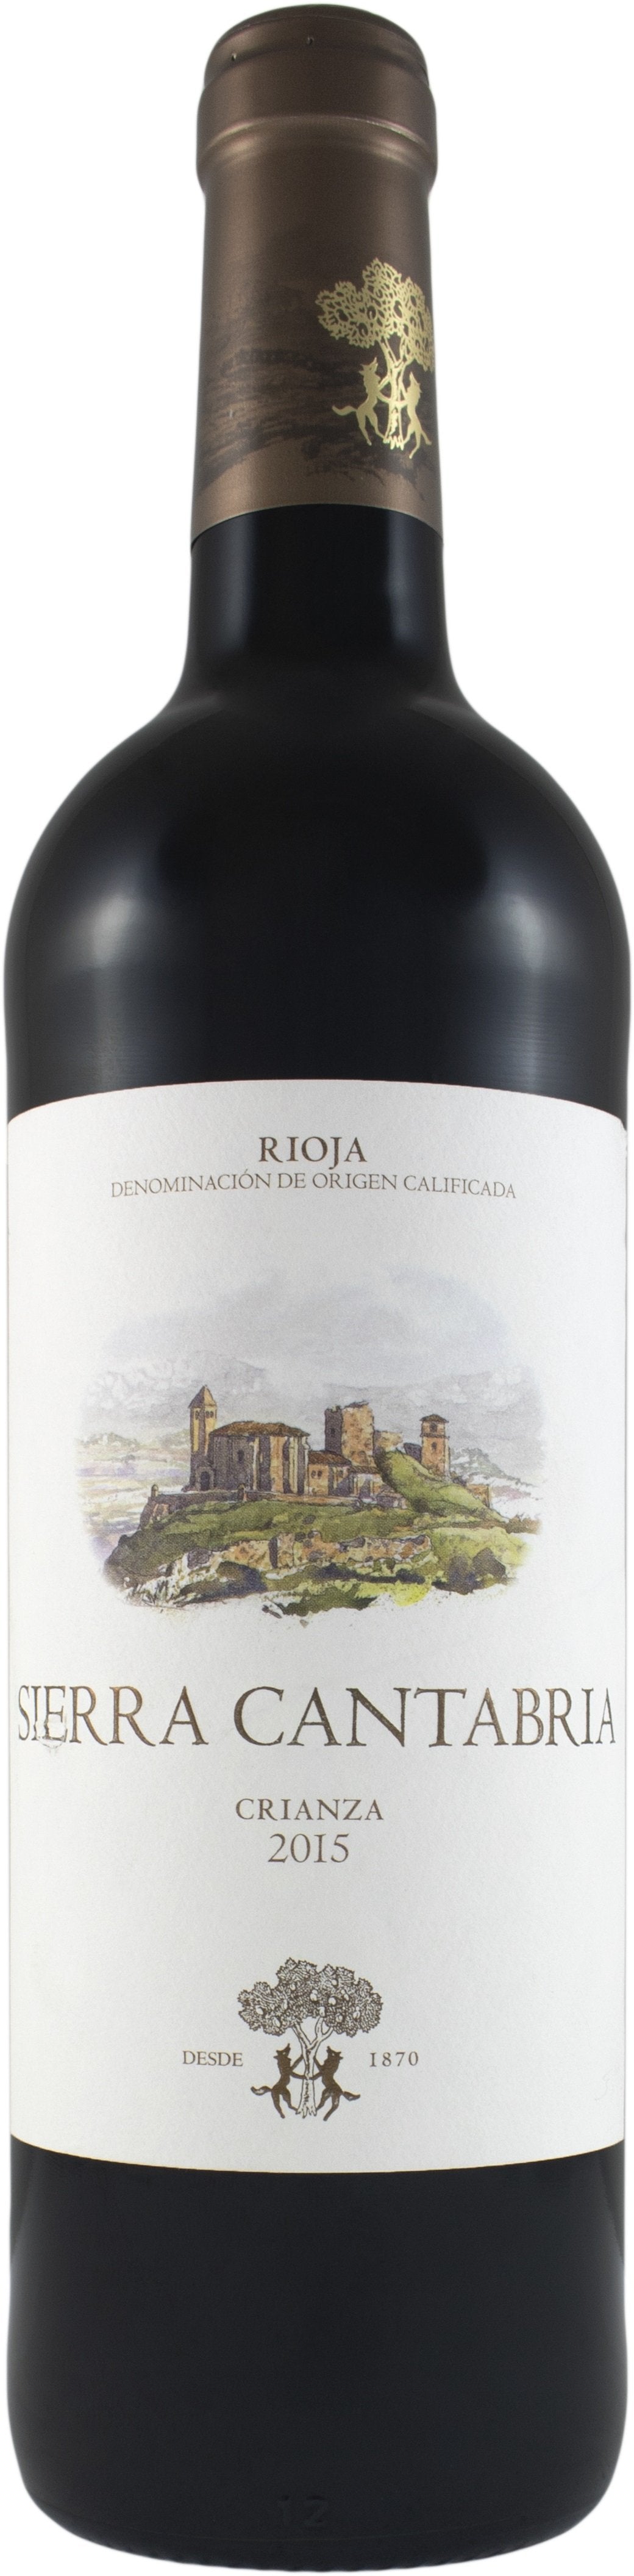 Sierra Cantabria Rioja Crianza 2015